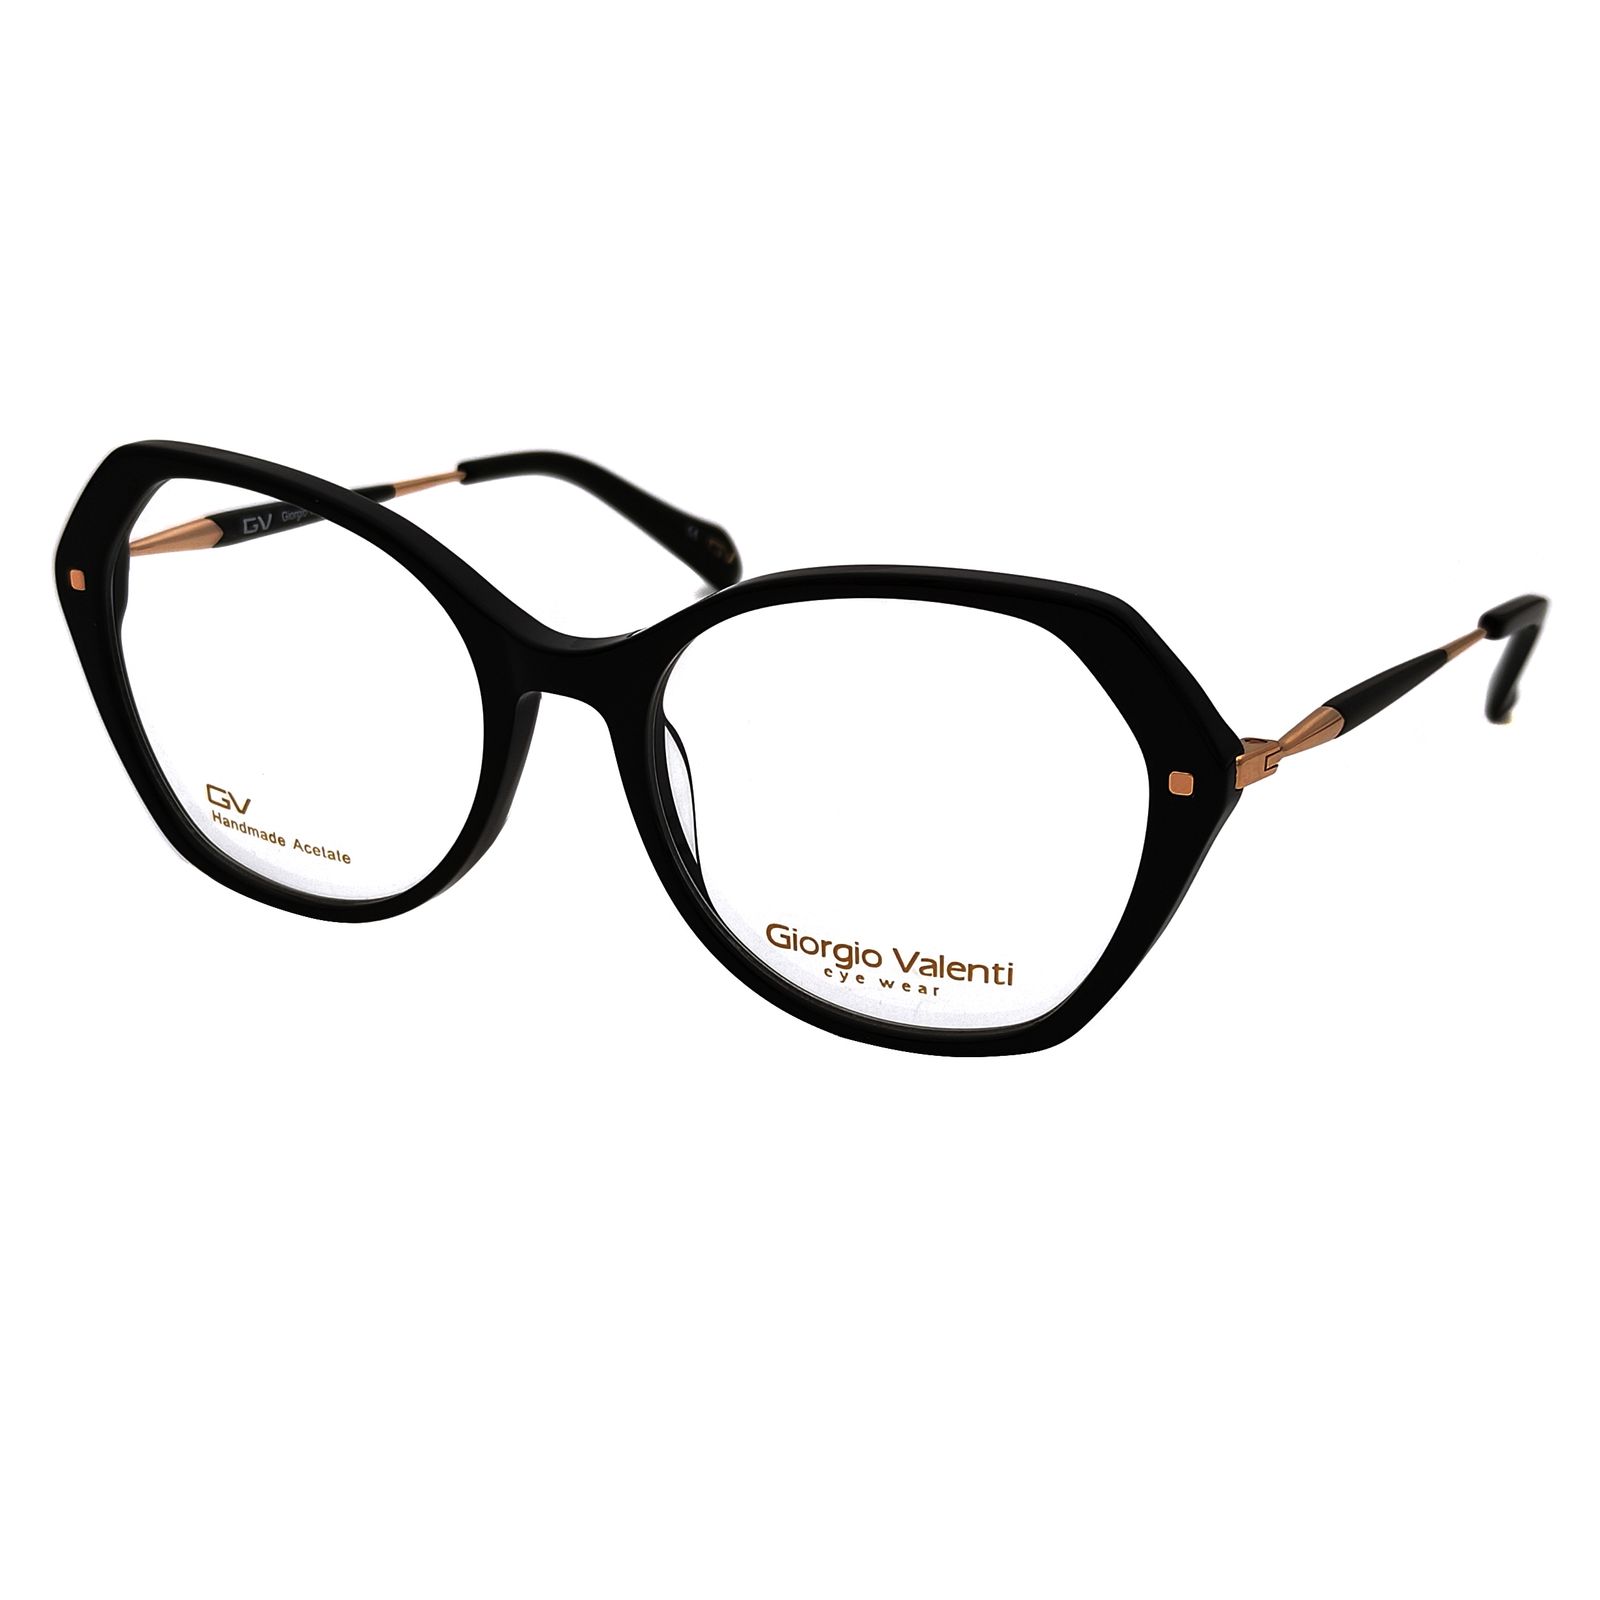 فریم عینک طبی زنانه جورجیو ولنتی مدل GV-4917 C3 -  - 1